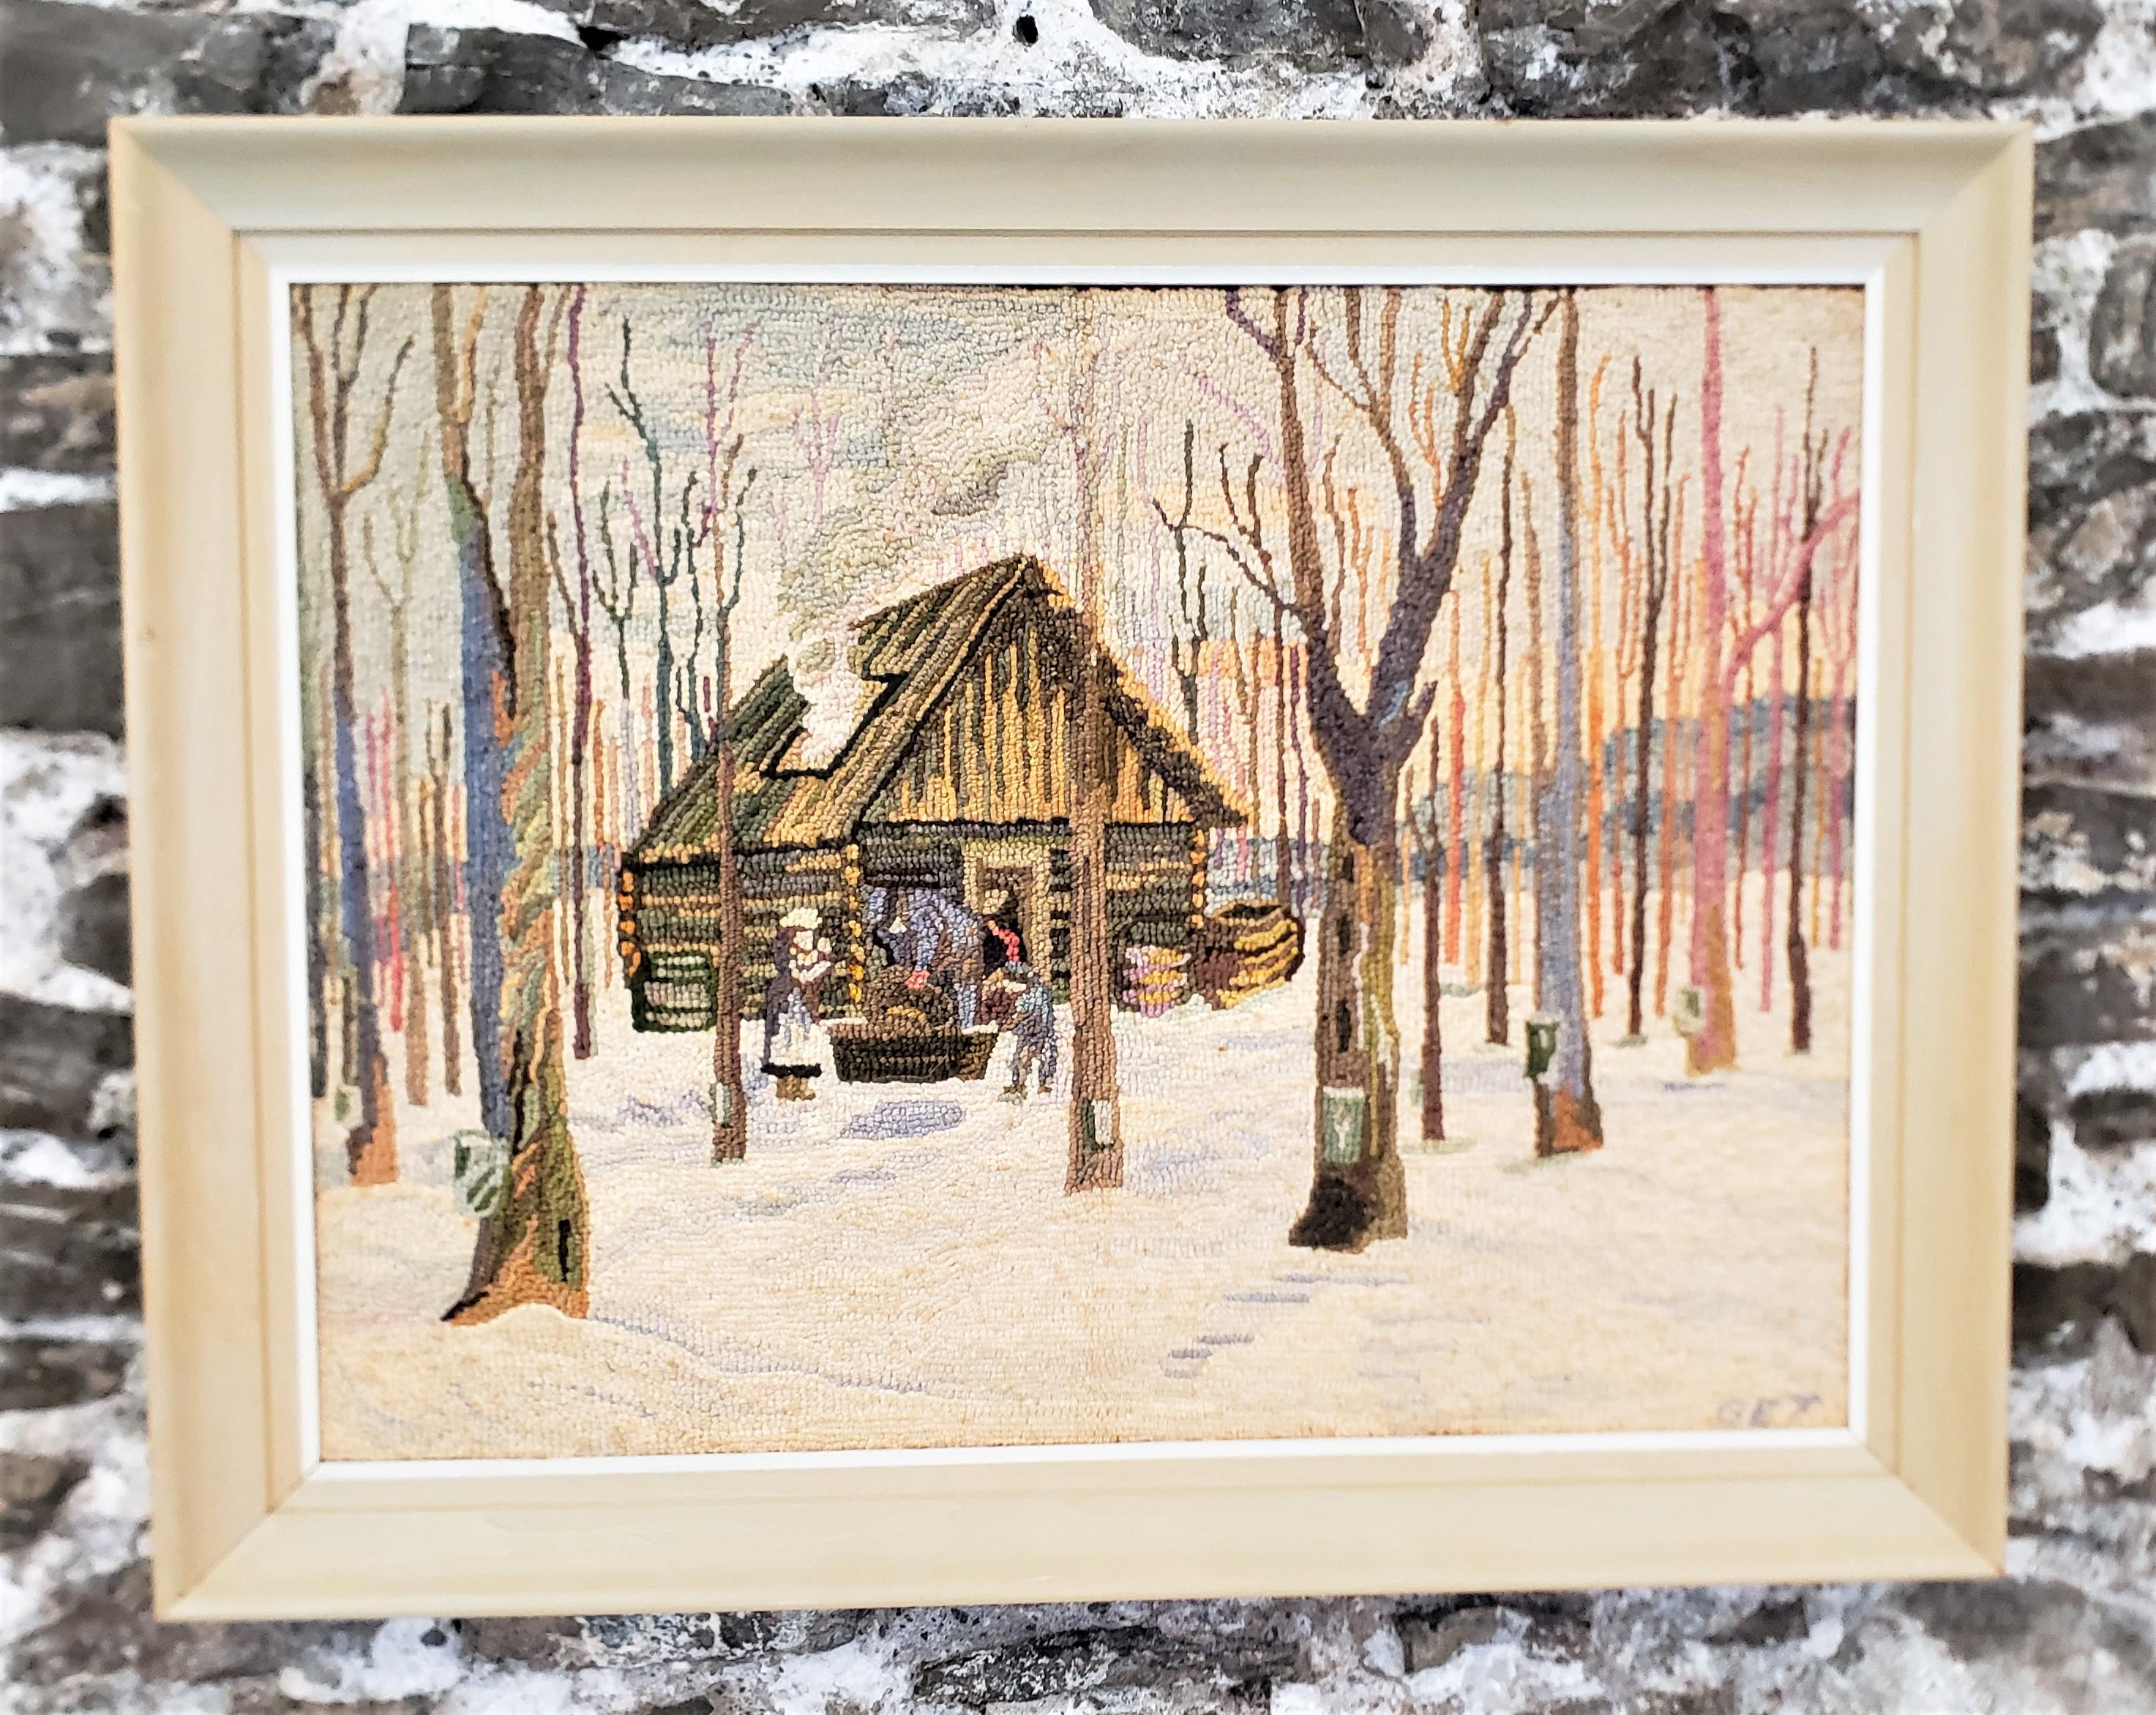 Ce tapis crocheté encadré a été réalisé par l'artiste bien connu George Edouard Tremblay du Québec (Canada) vers 1940 dans son style Folk Art de l'époque. Le tapis ou la natte est fait de laine sur de la toile de jute qui a été montée sur une